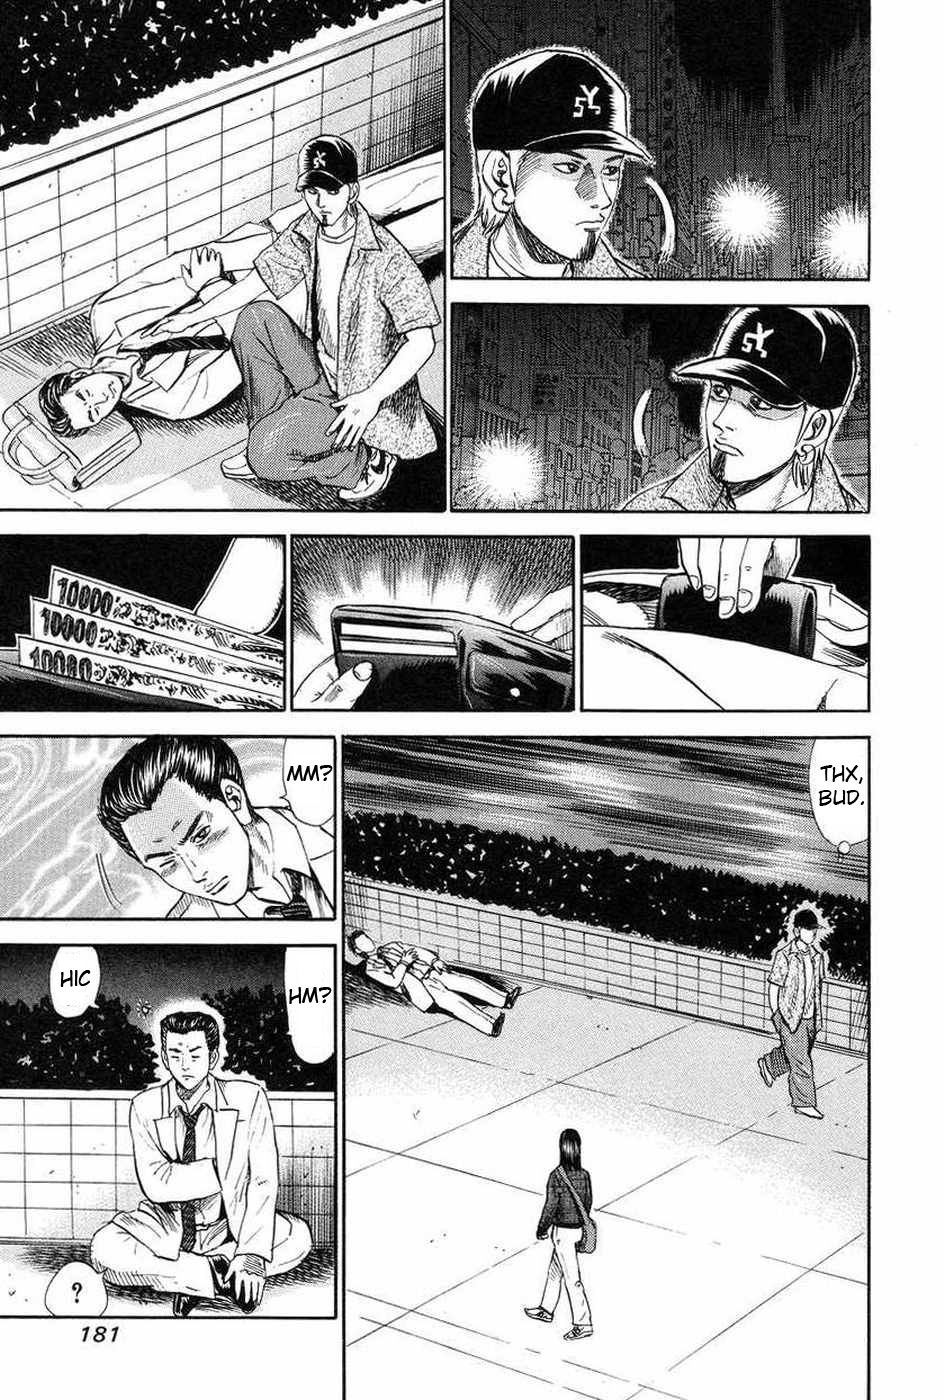 Uramiya Honpo Vol.16 Chapter 110.5: Shiwasuda Vs Drunken Fist - Picture 3